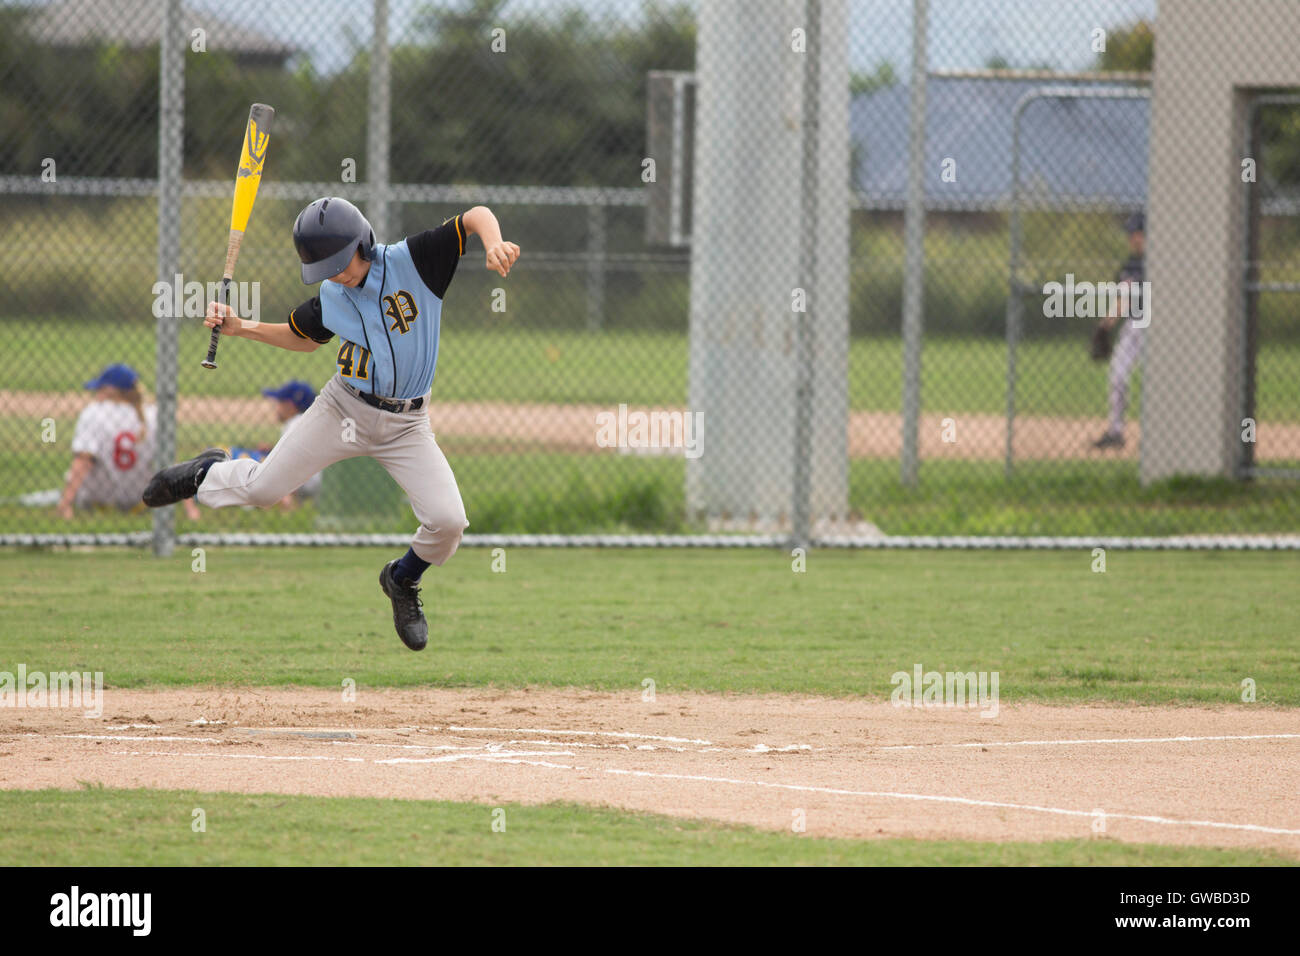 Ein Teenager weicht einen eigensinnigen Pitch während an bat bei einem Baseball-Spiel in Cairns, Australien Stockfoto